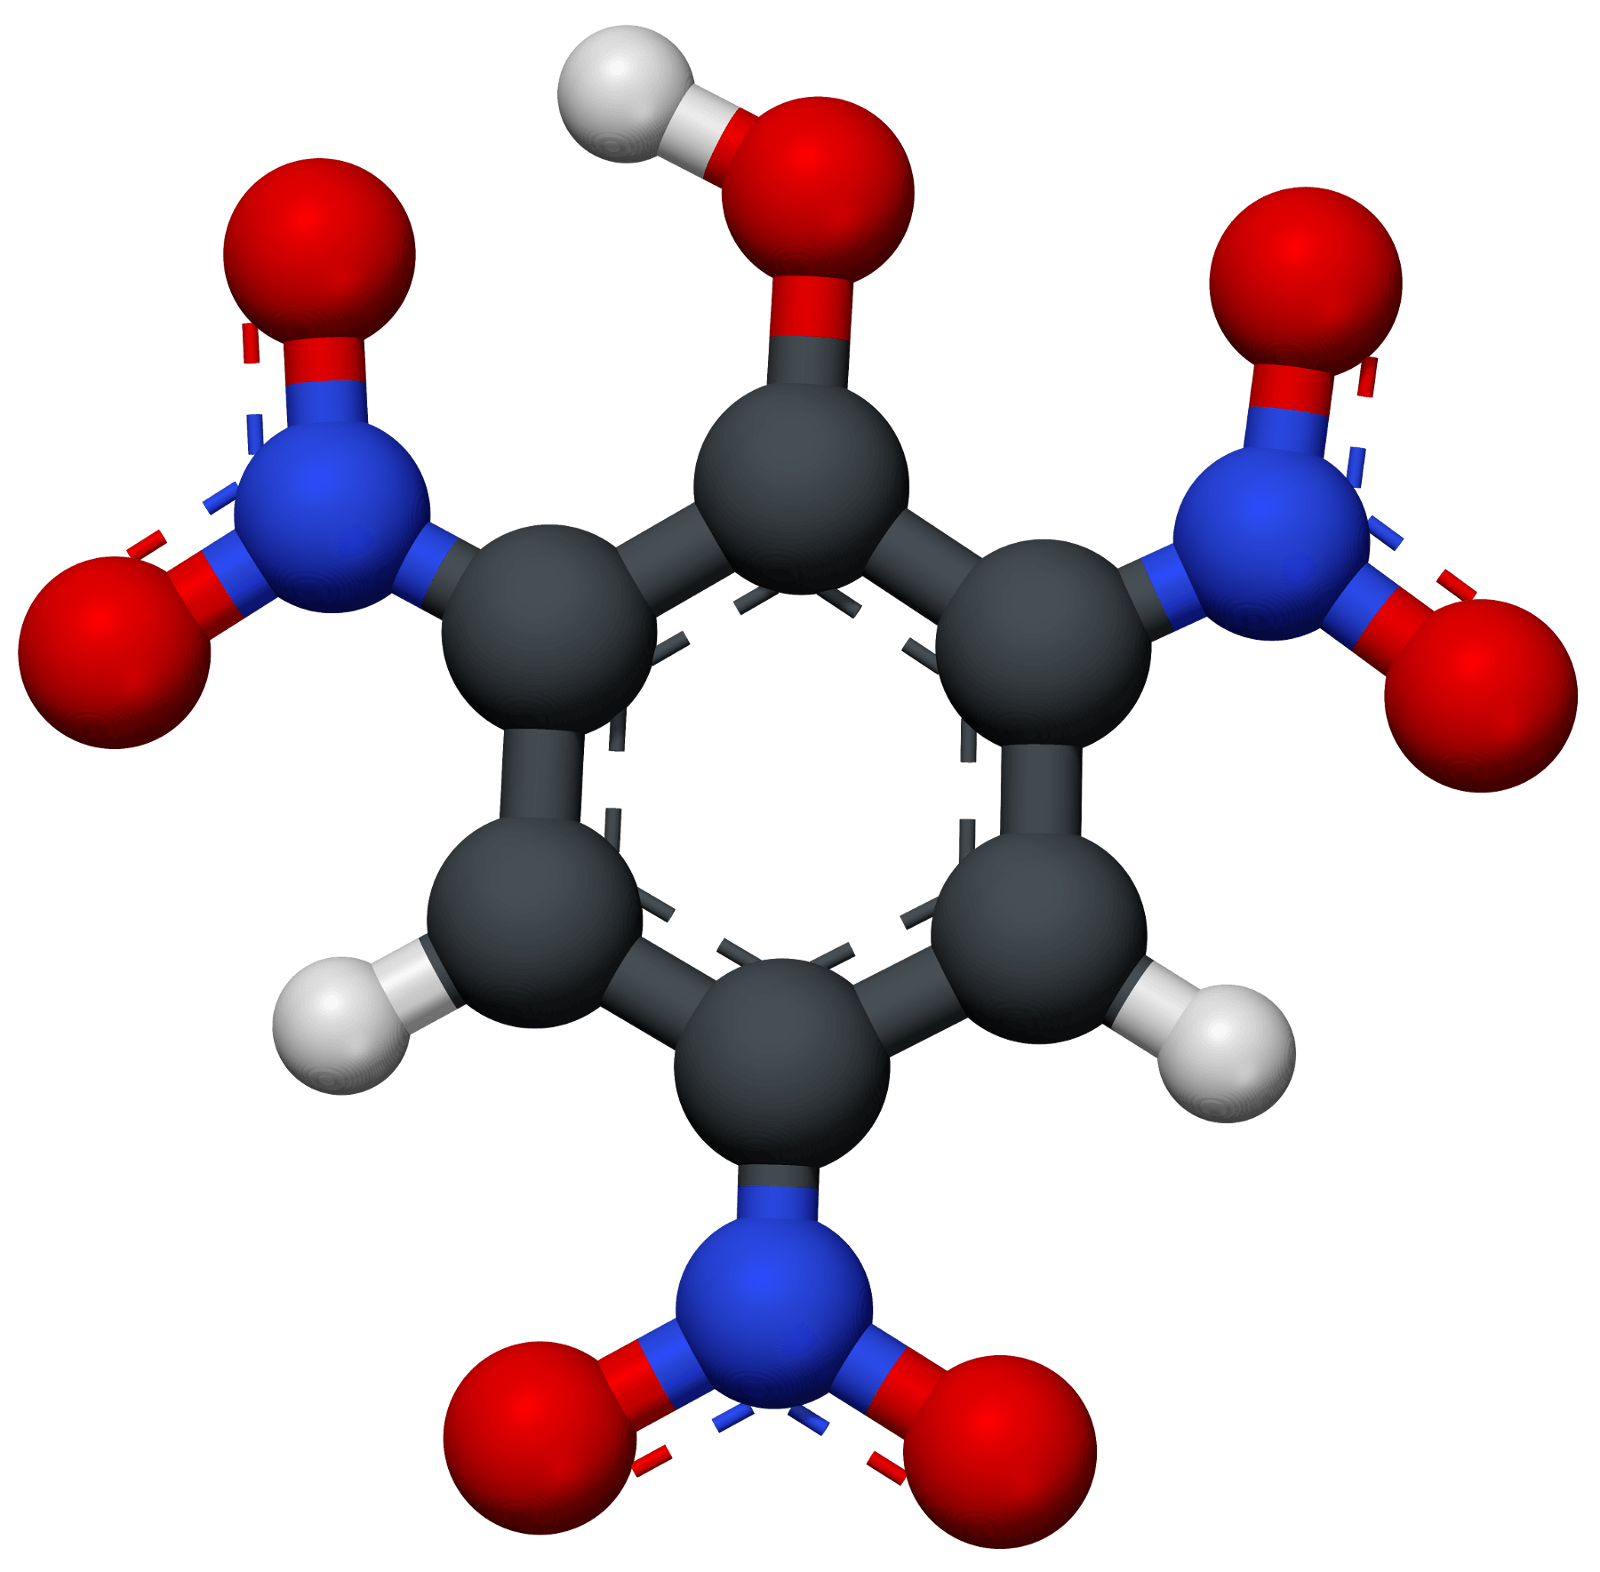 Quy trình nitrate hóa phenol, benzen trong phản ứng Wolfenstein-Boters là gì?
